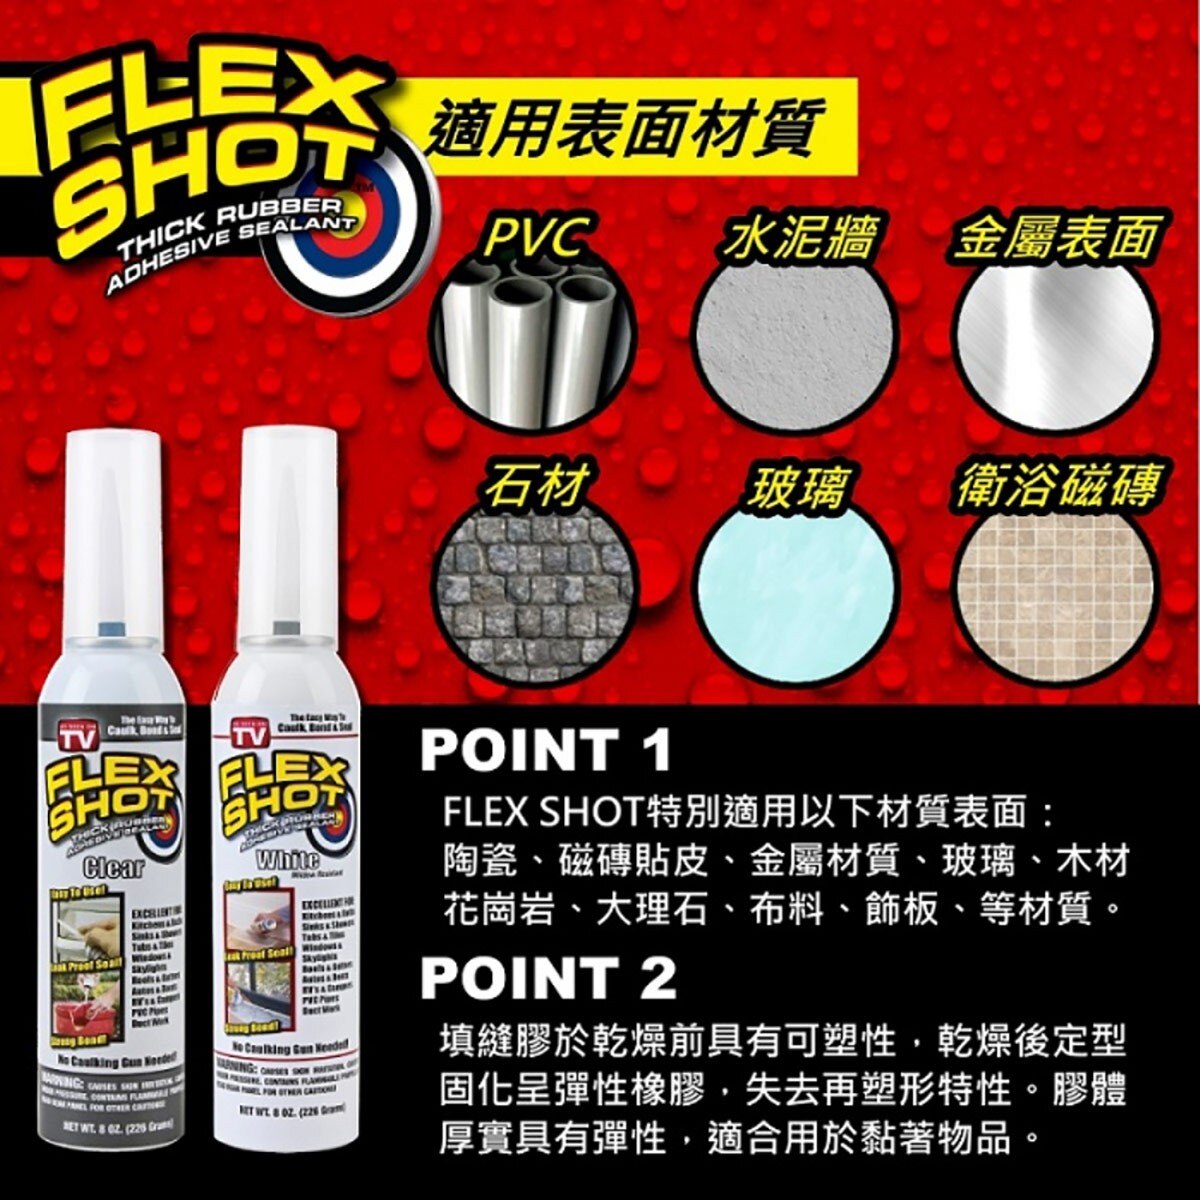 FLEX SHOT 速效填縫膠-透明色，速效快乾，無氟氯碳化物成份。